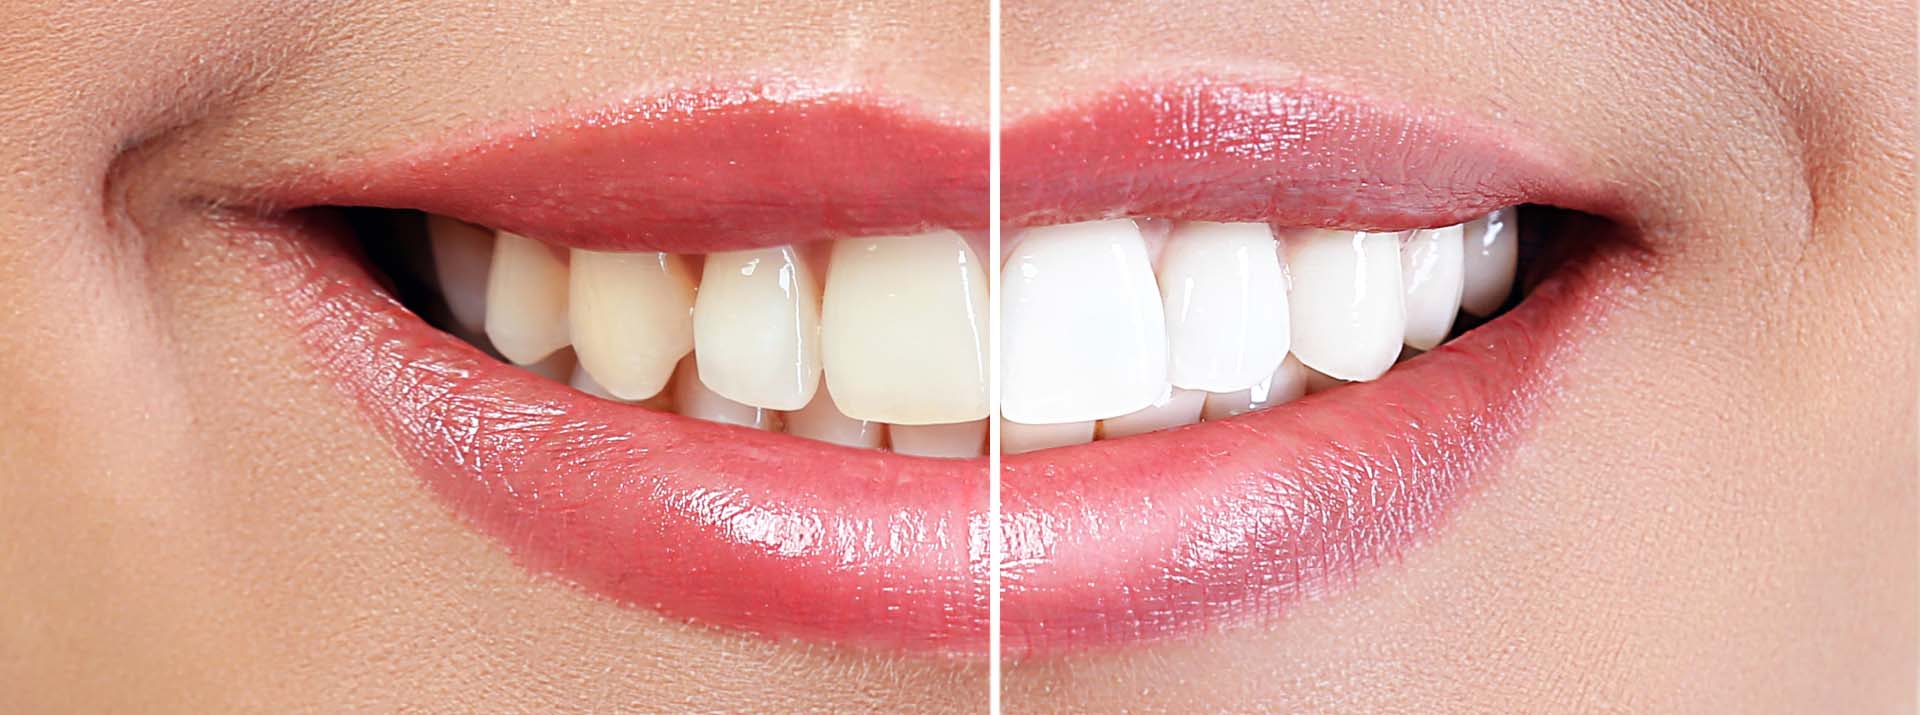 Ce este albirea dentara?